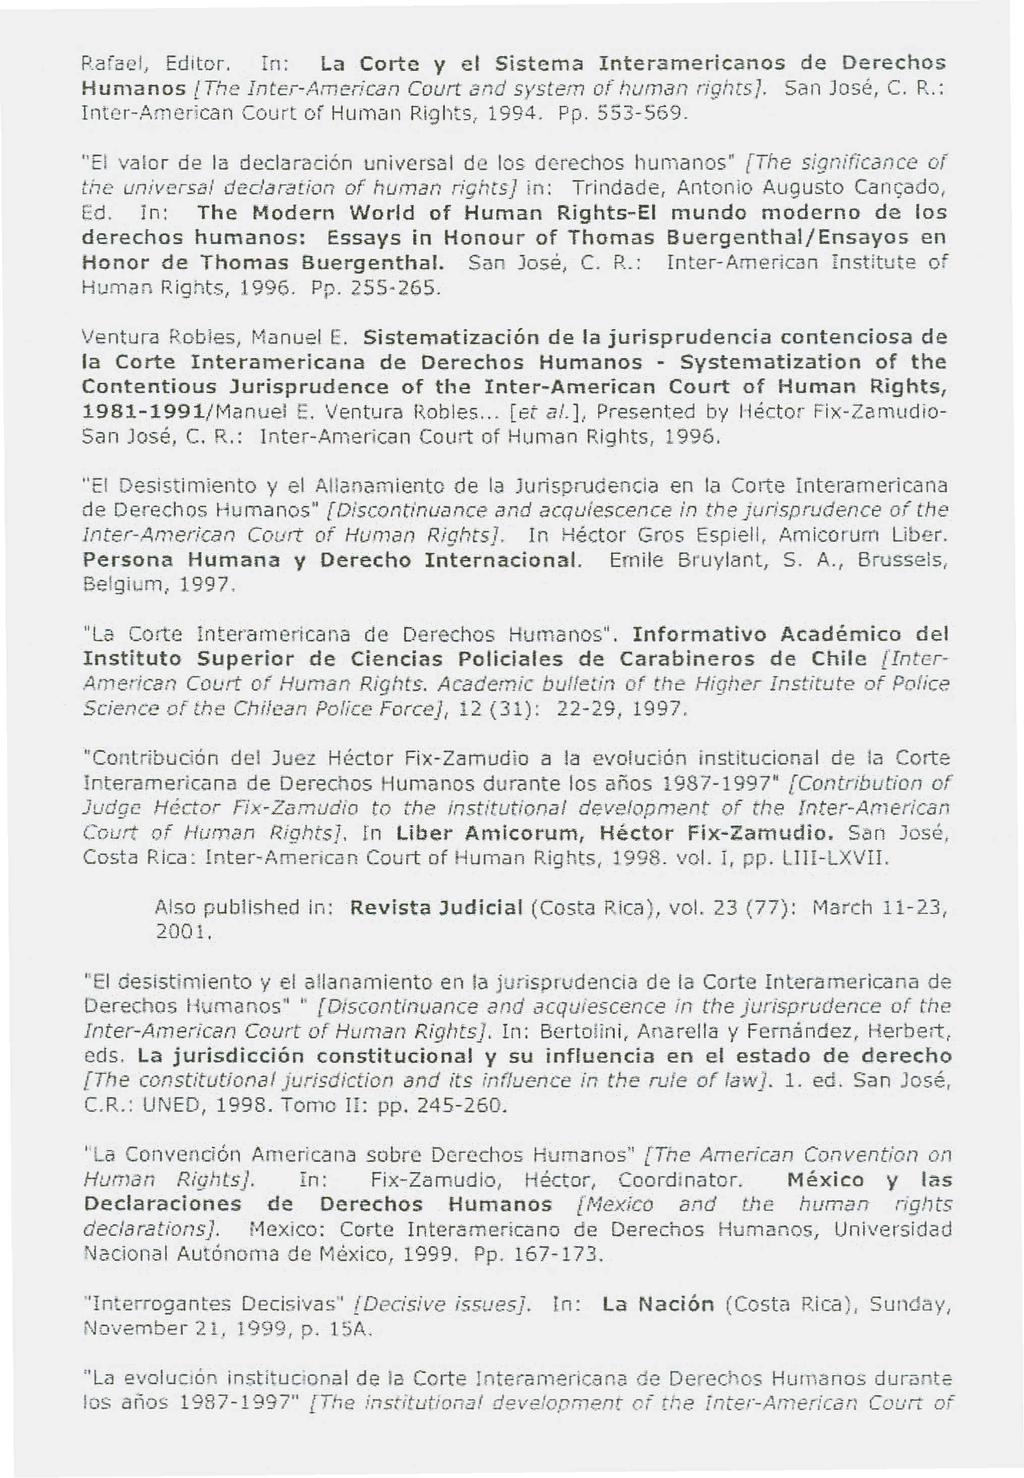 R.afcH?I, Editor. rn: La Corte y el Sistema Interamericanos de Derechos Humanos [The Inter-American Court and system or human rights]. San Jose, C. R.; Inter-American Court of Human Rights, 1994. Pp.